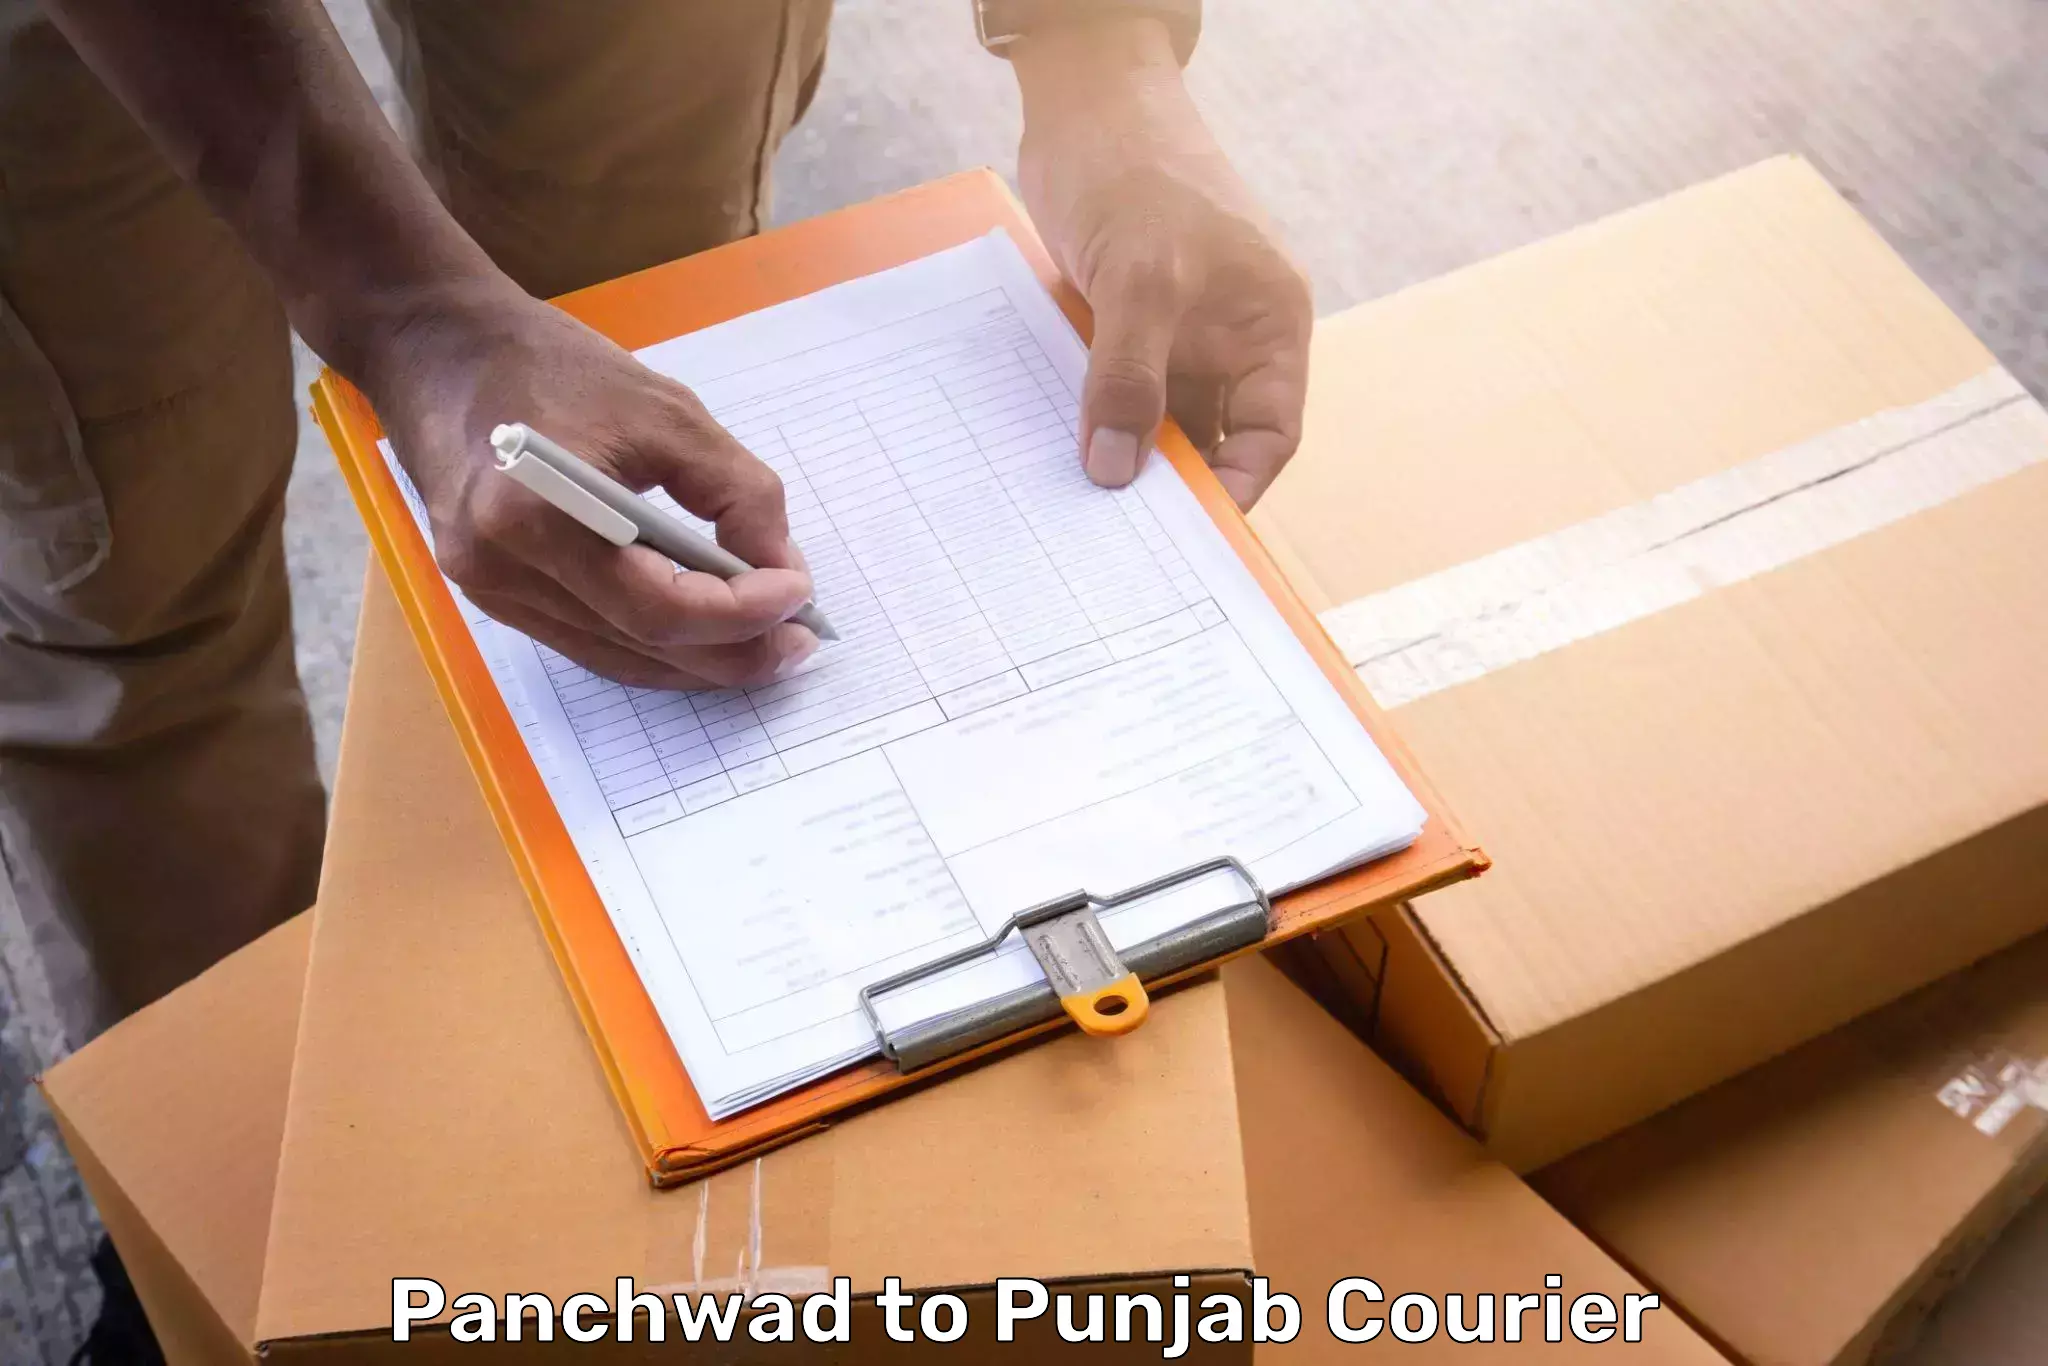 Luggage transport deals Panchwad to Punjab